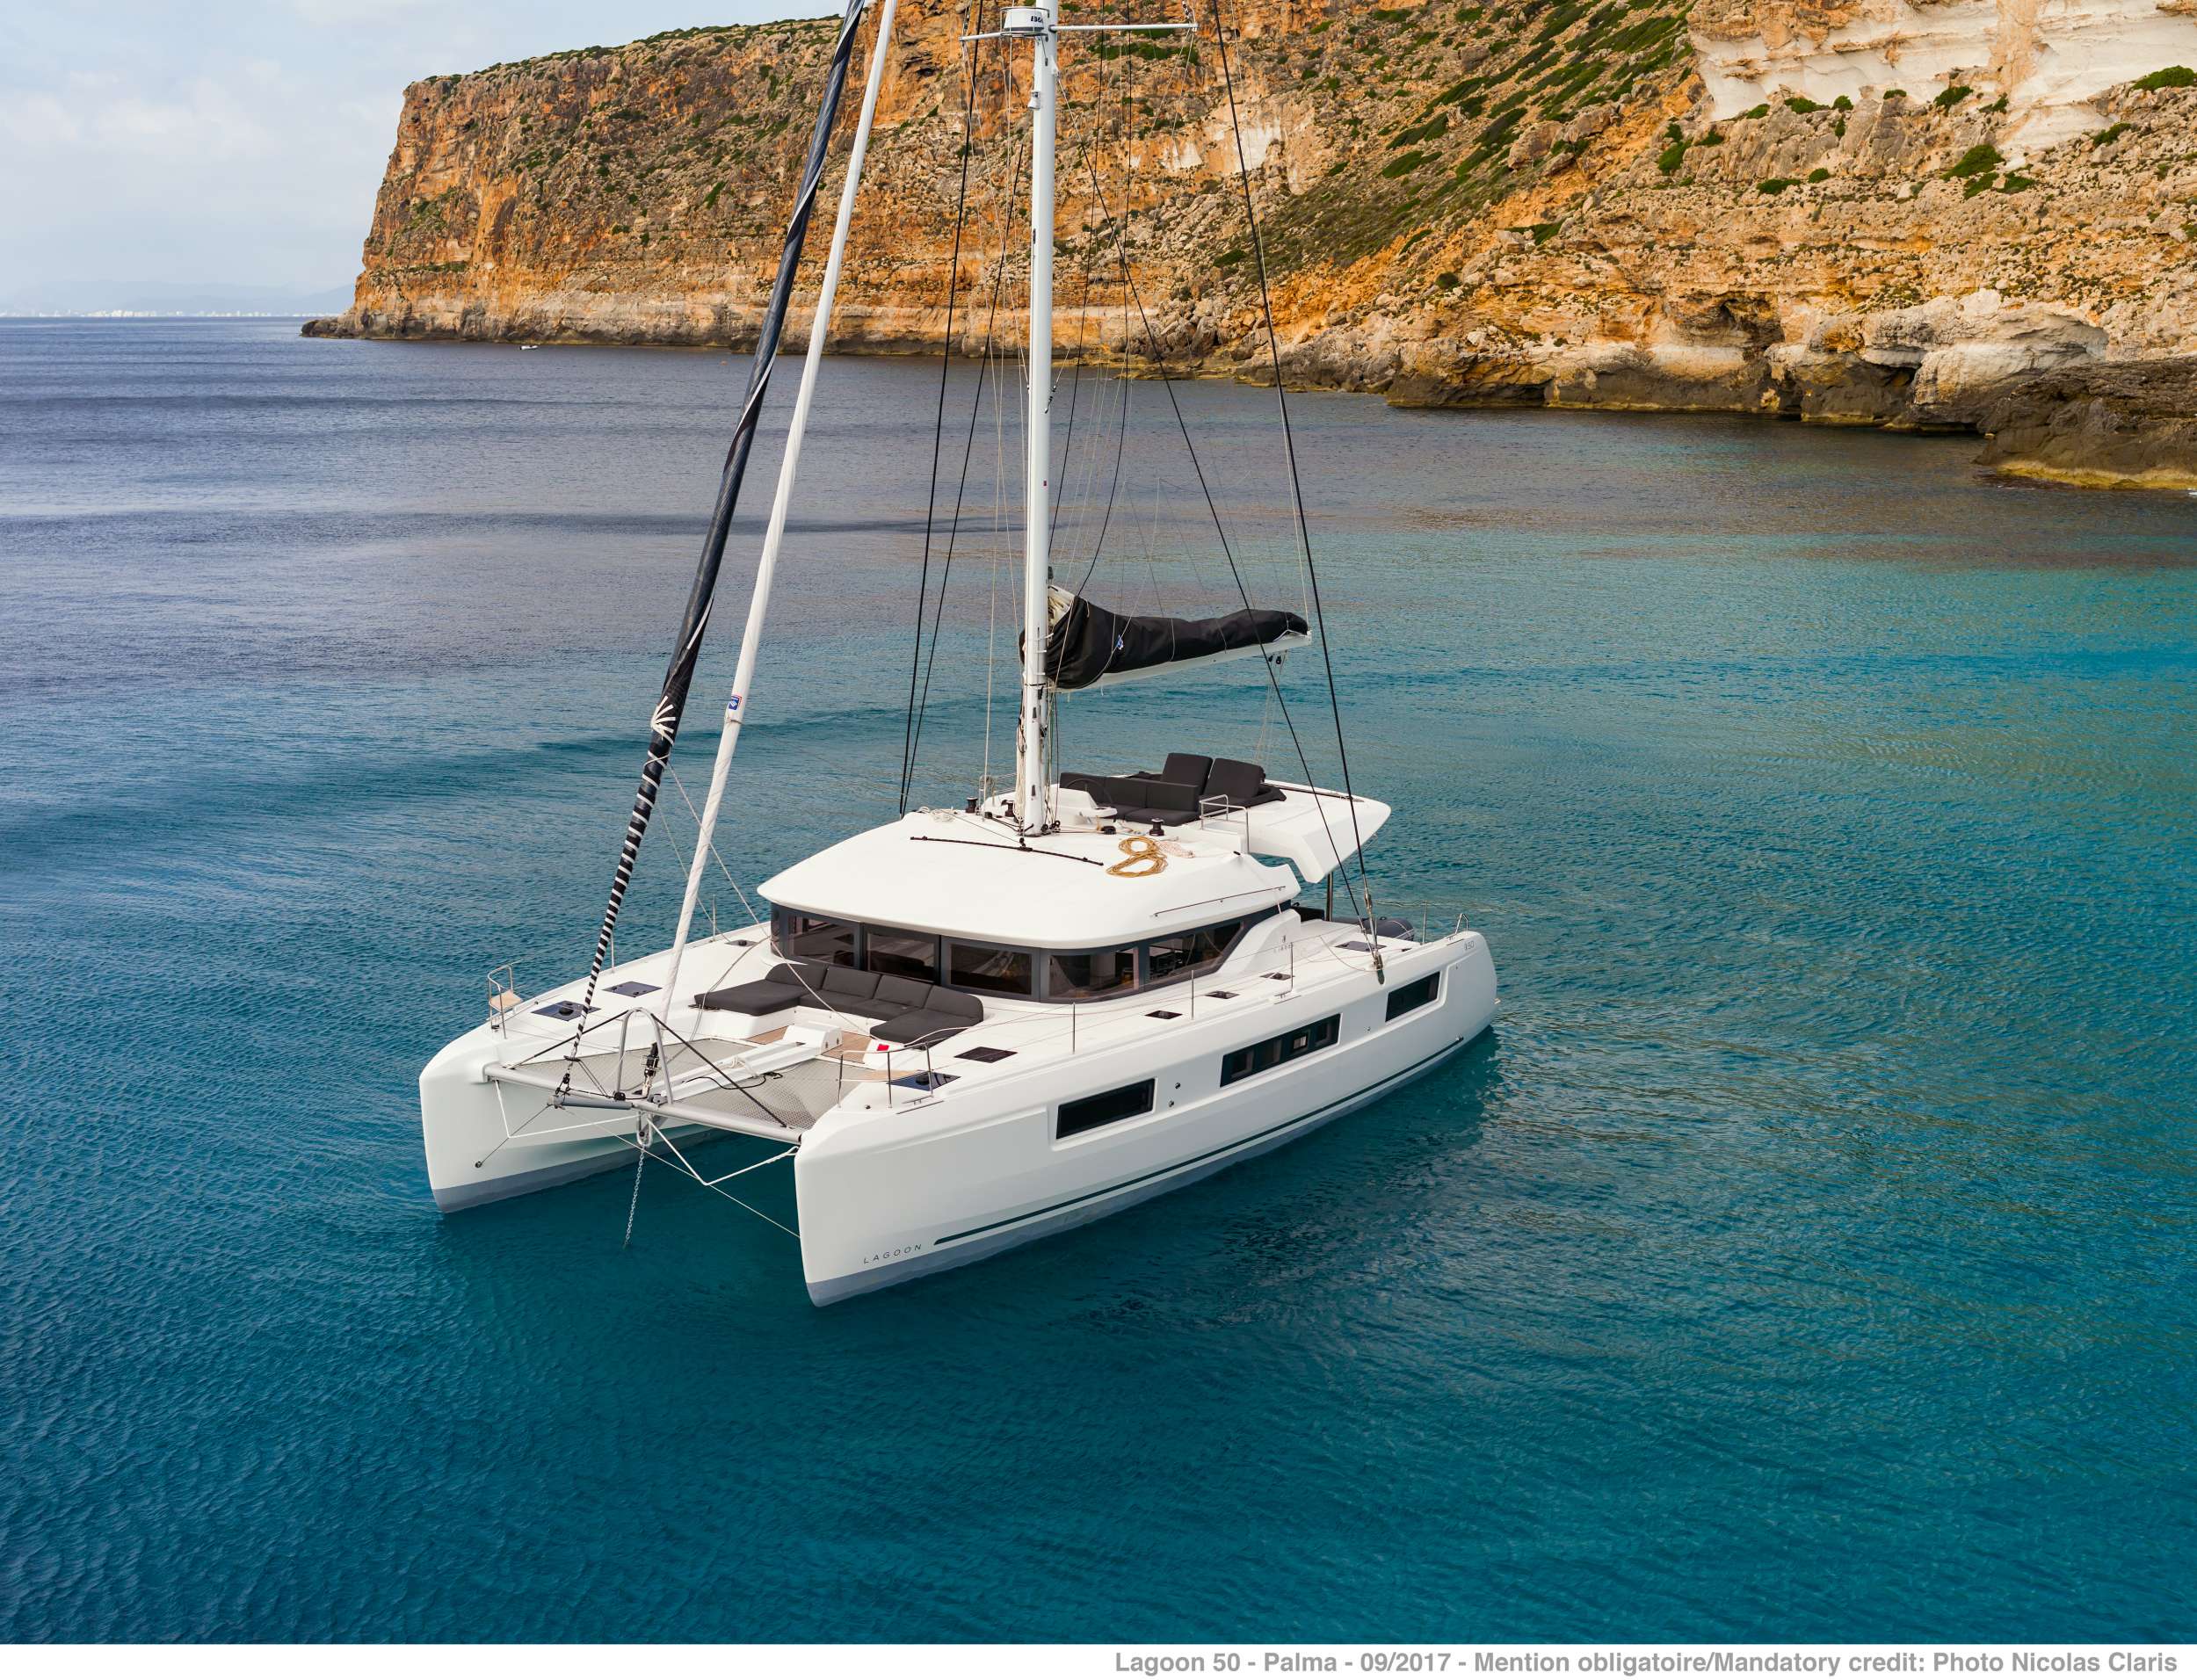 ONEIDA 2 - Yacht Charter Keramoti & Boat hire in Greece 1